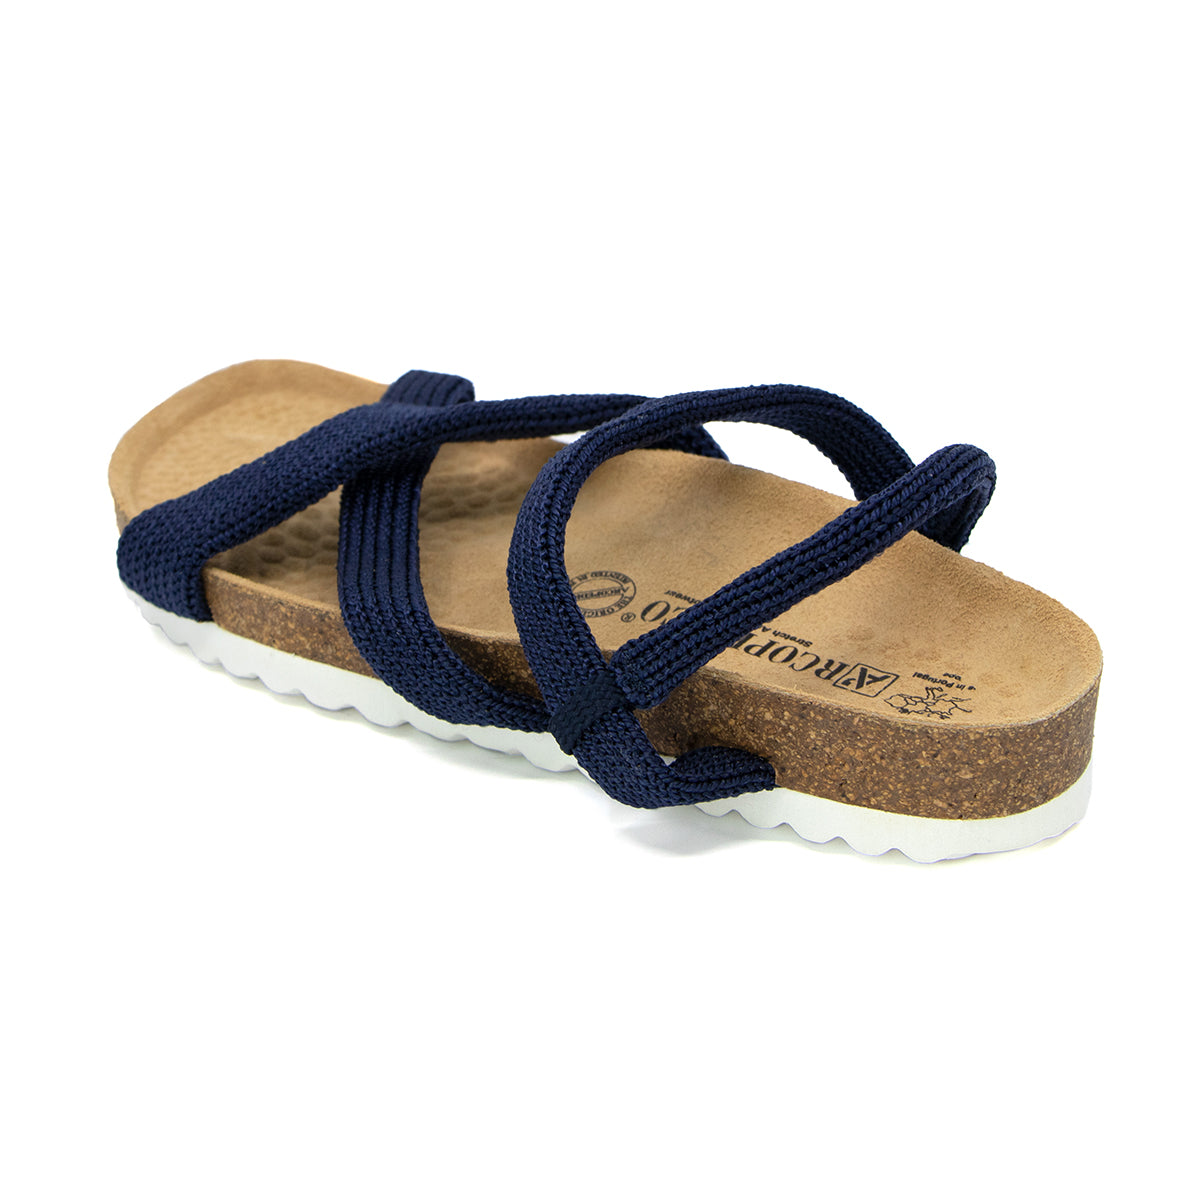 Santana Navy Comfort Sole Sandals